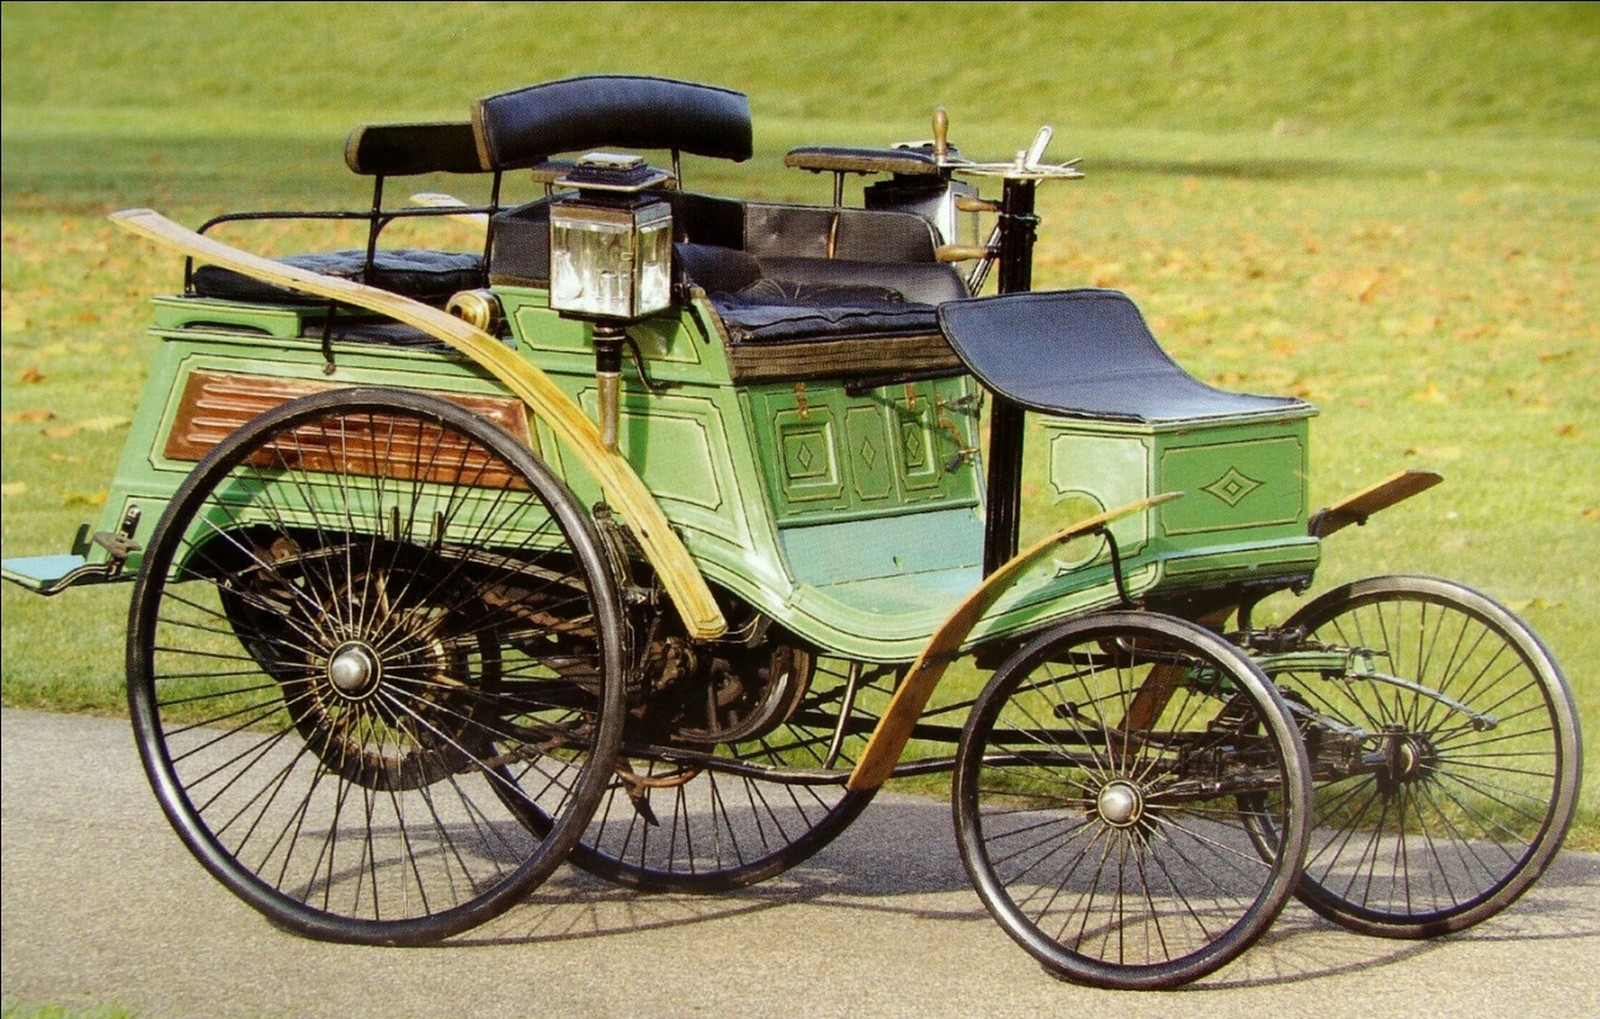 Немецкий четырехместный автомобиль Benz Velo Comfortable. 1897 год